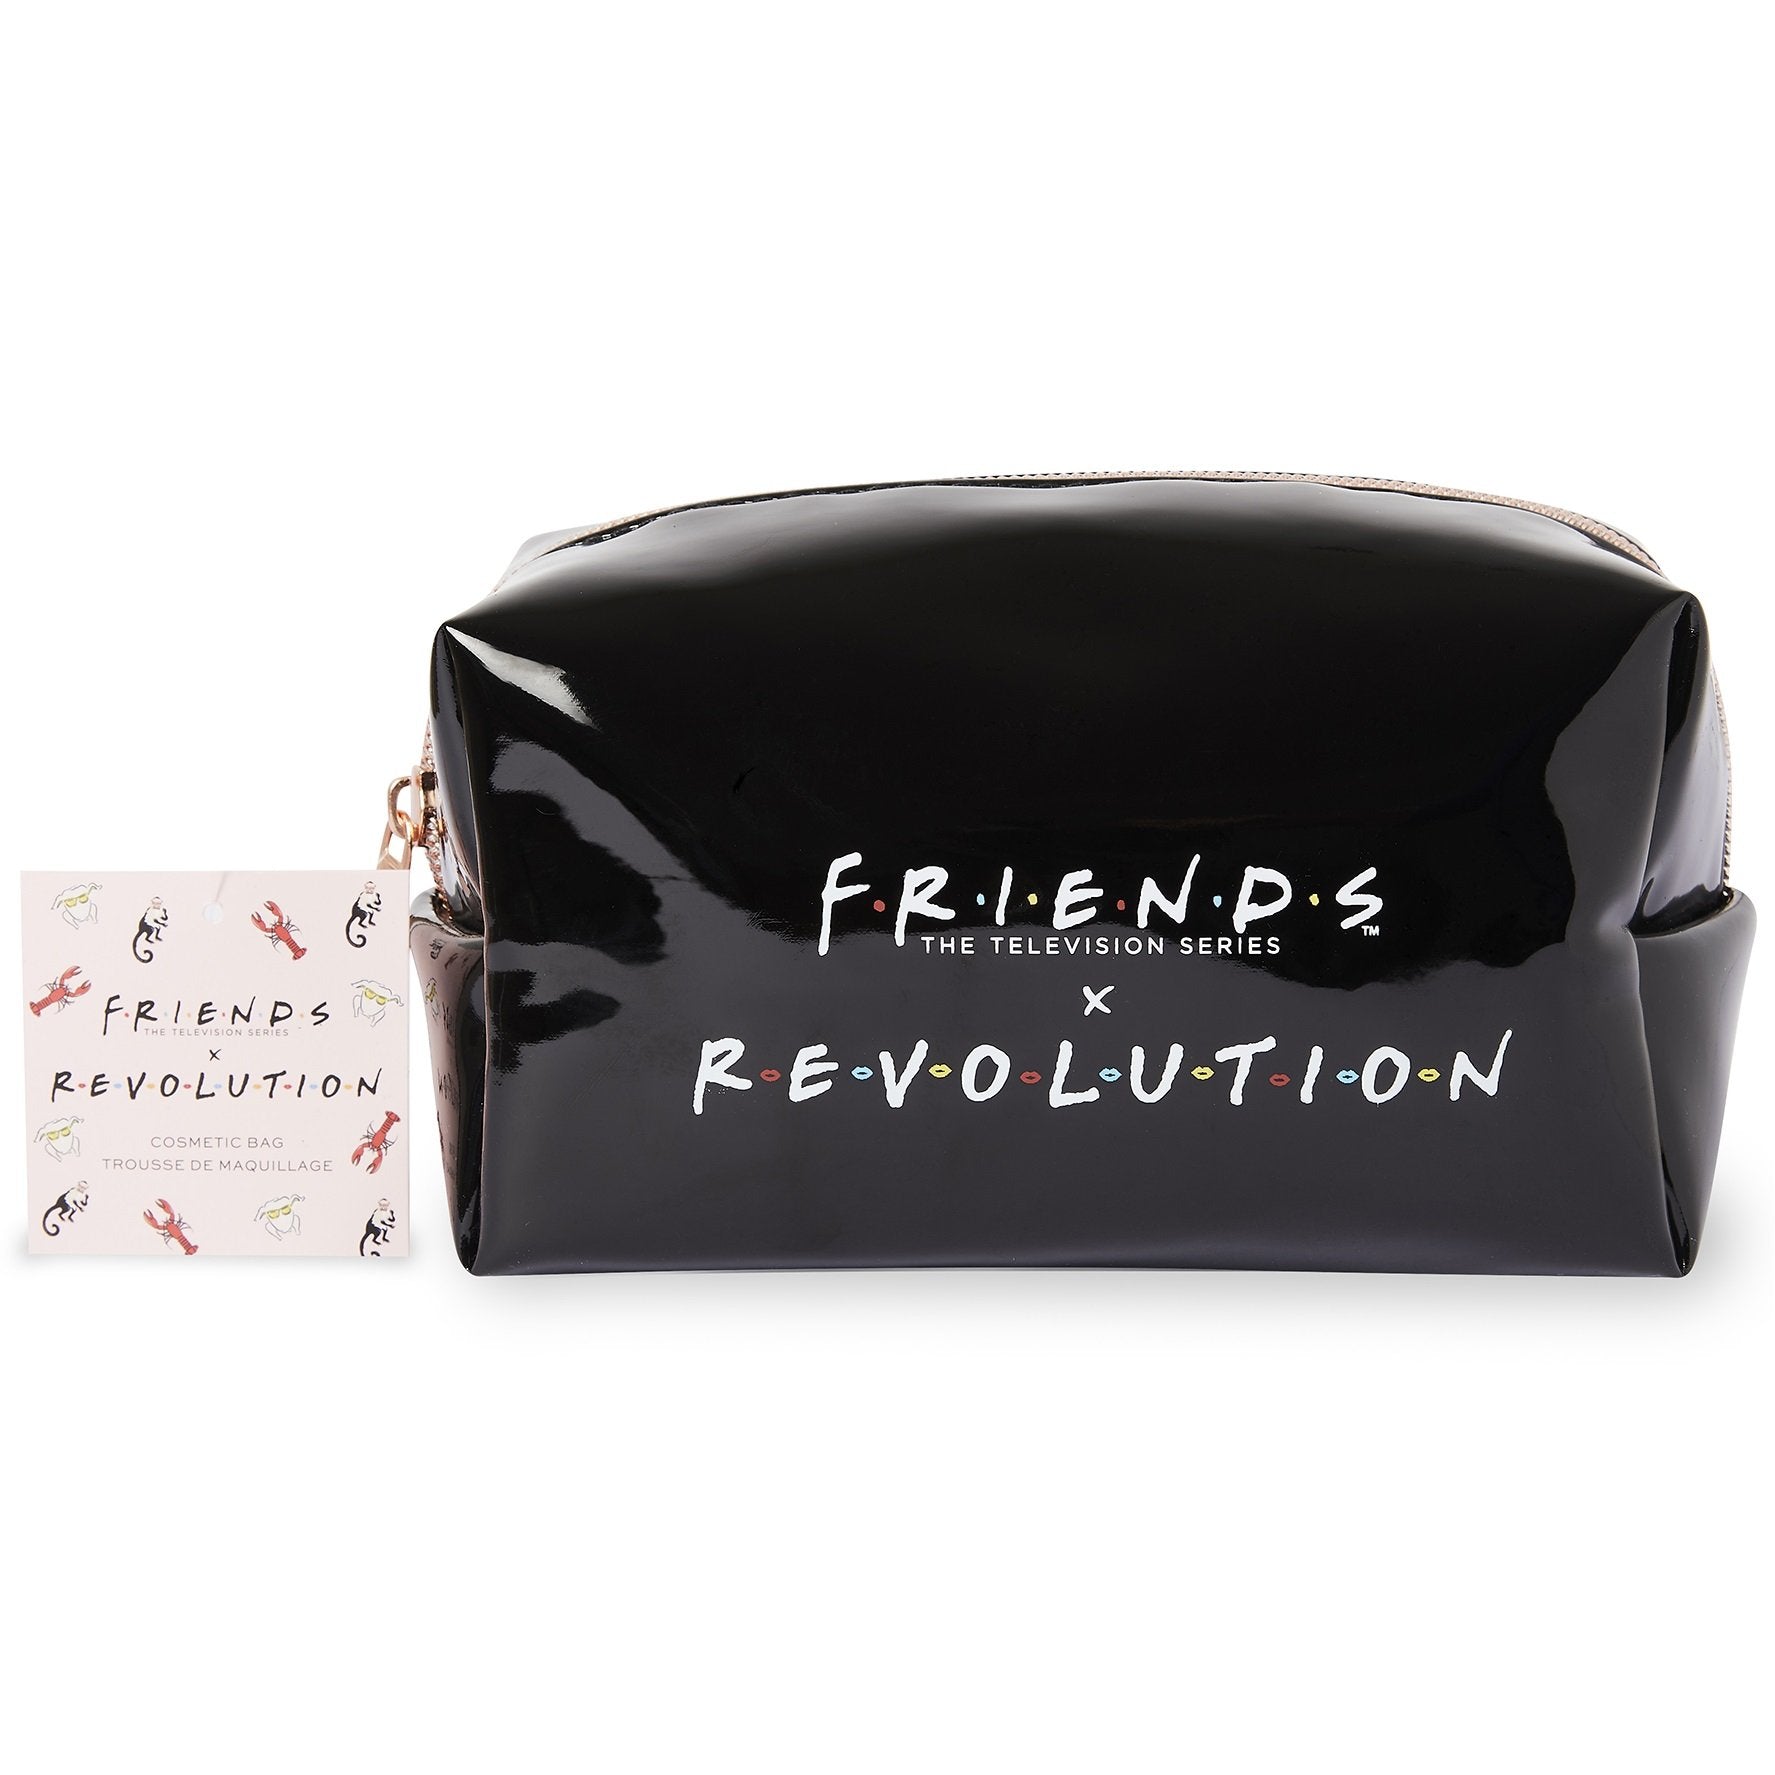 Revolution x Clueless Shopper Cosmetics Bag